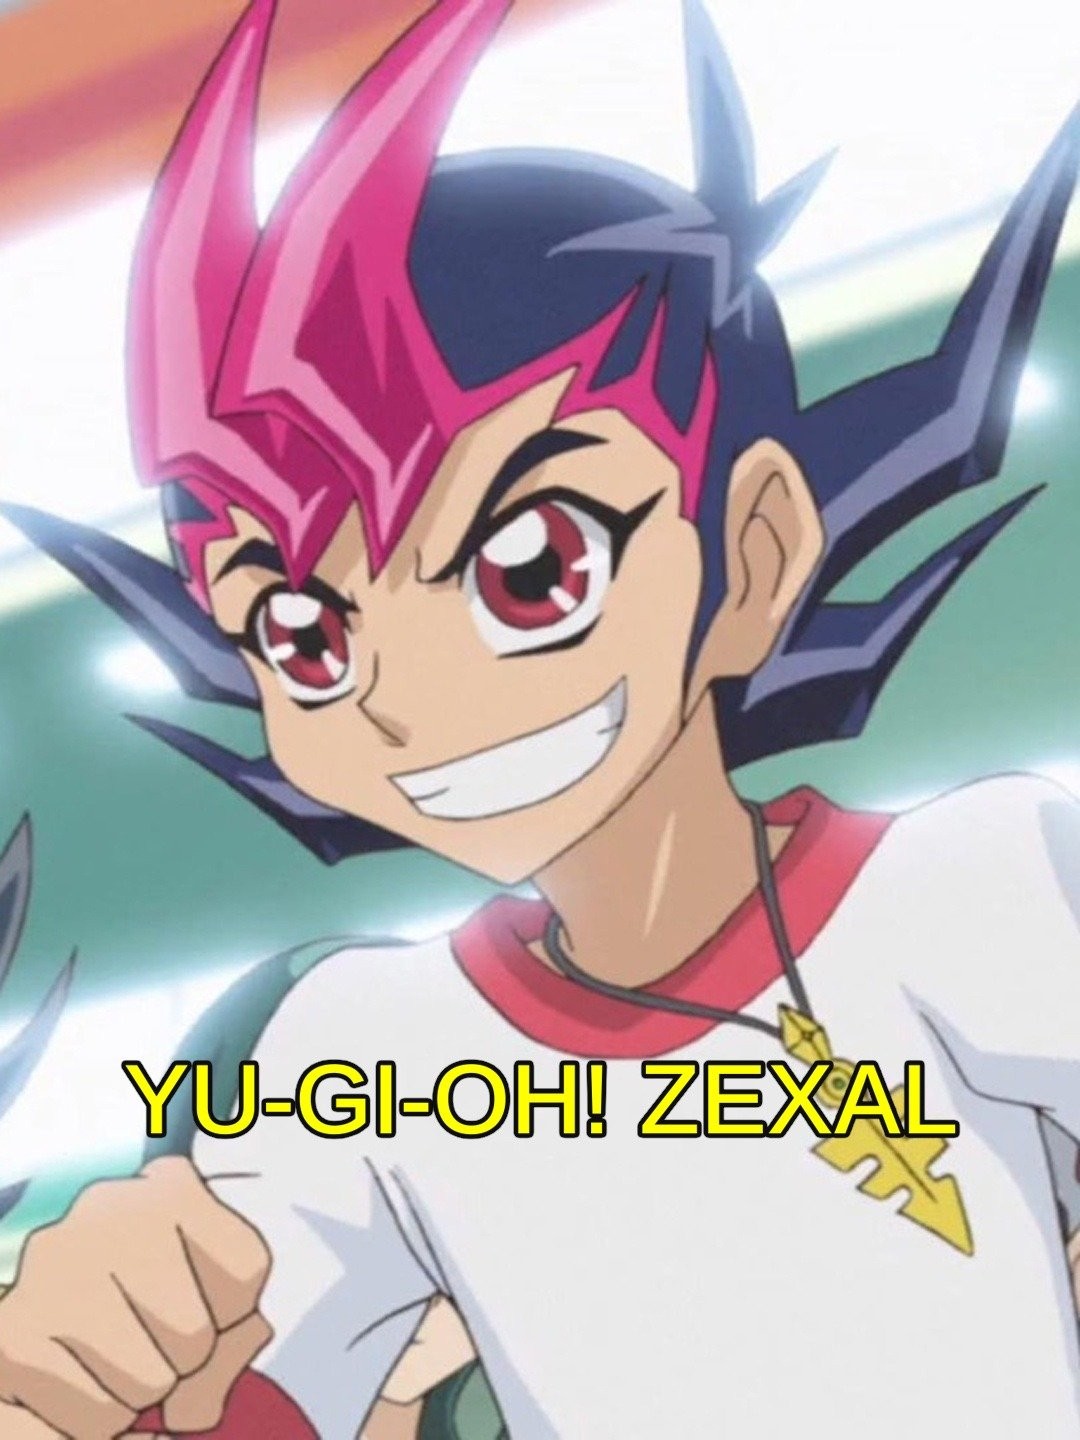 Watch Yu-Gi-Oh! ZEXAL - Free TV Shows